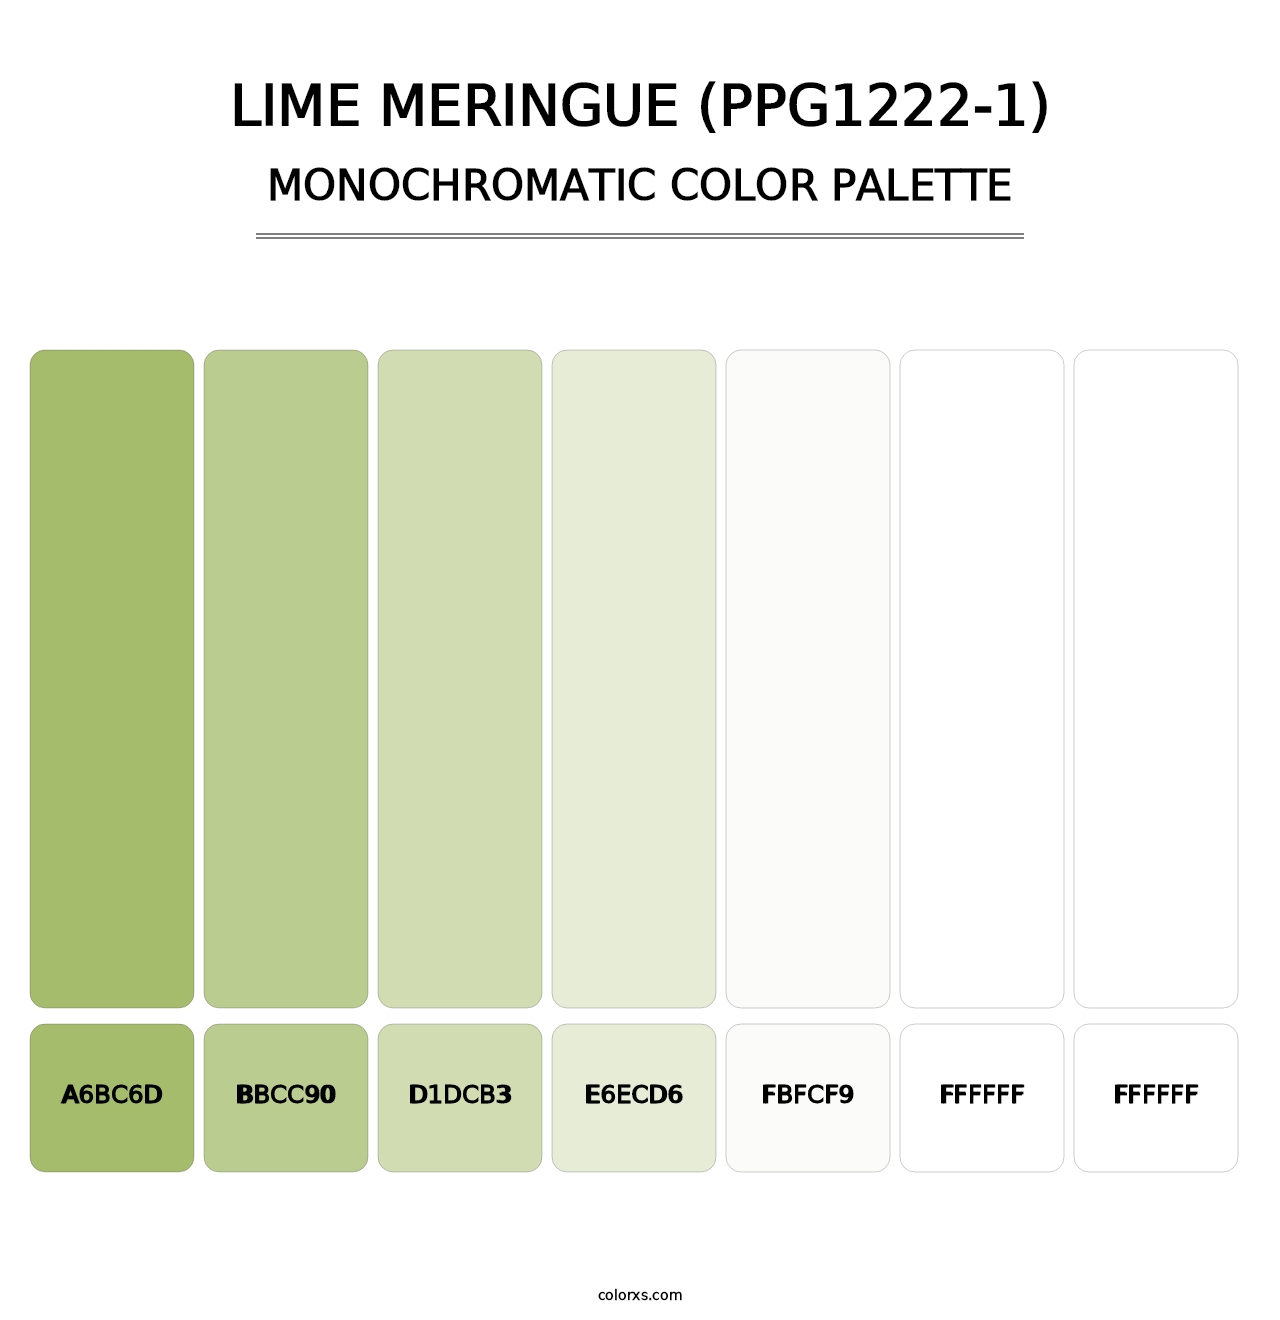 Lime Meringue (PPG1222-1) - Monochromatic Color Palette